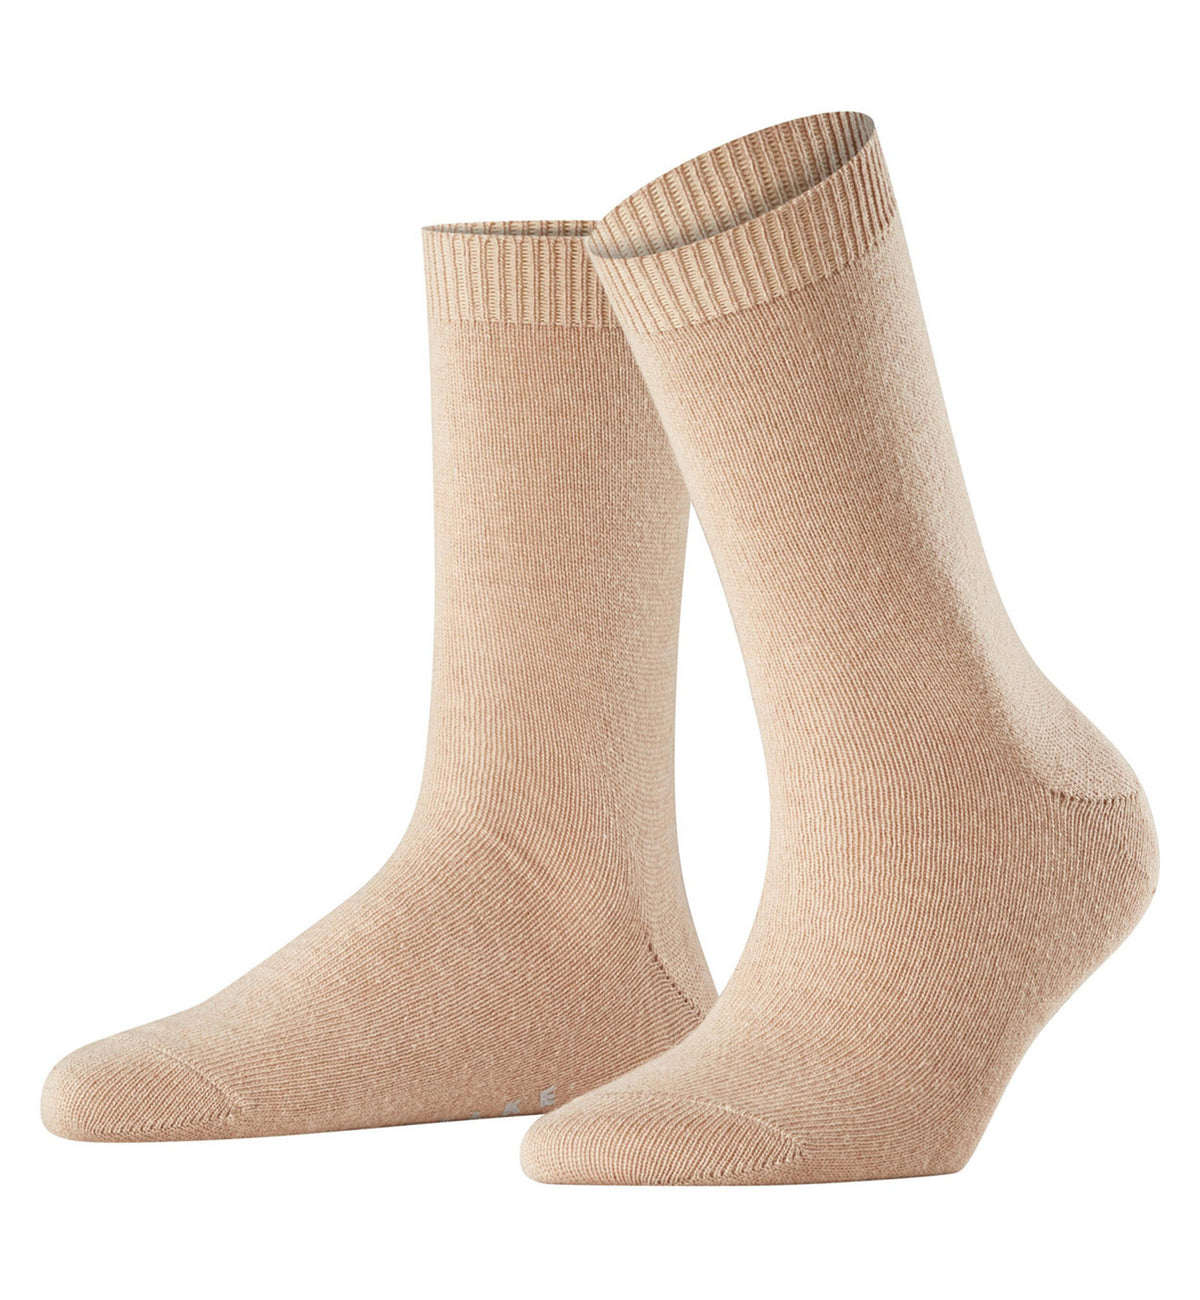 FALKE Cosy Wool Crew Socks (47548),5/7.5,Camel - Camel,5/7.5